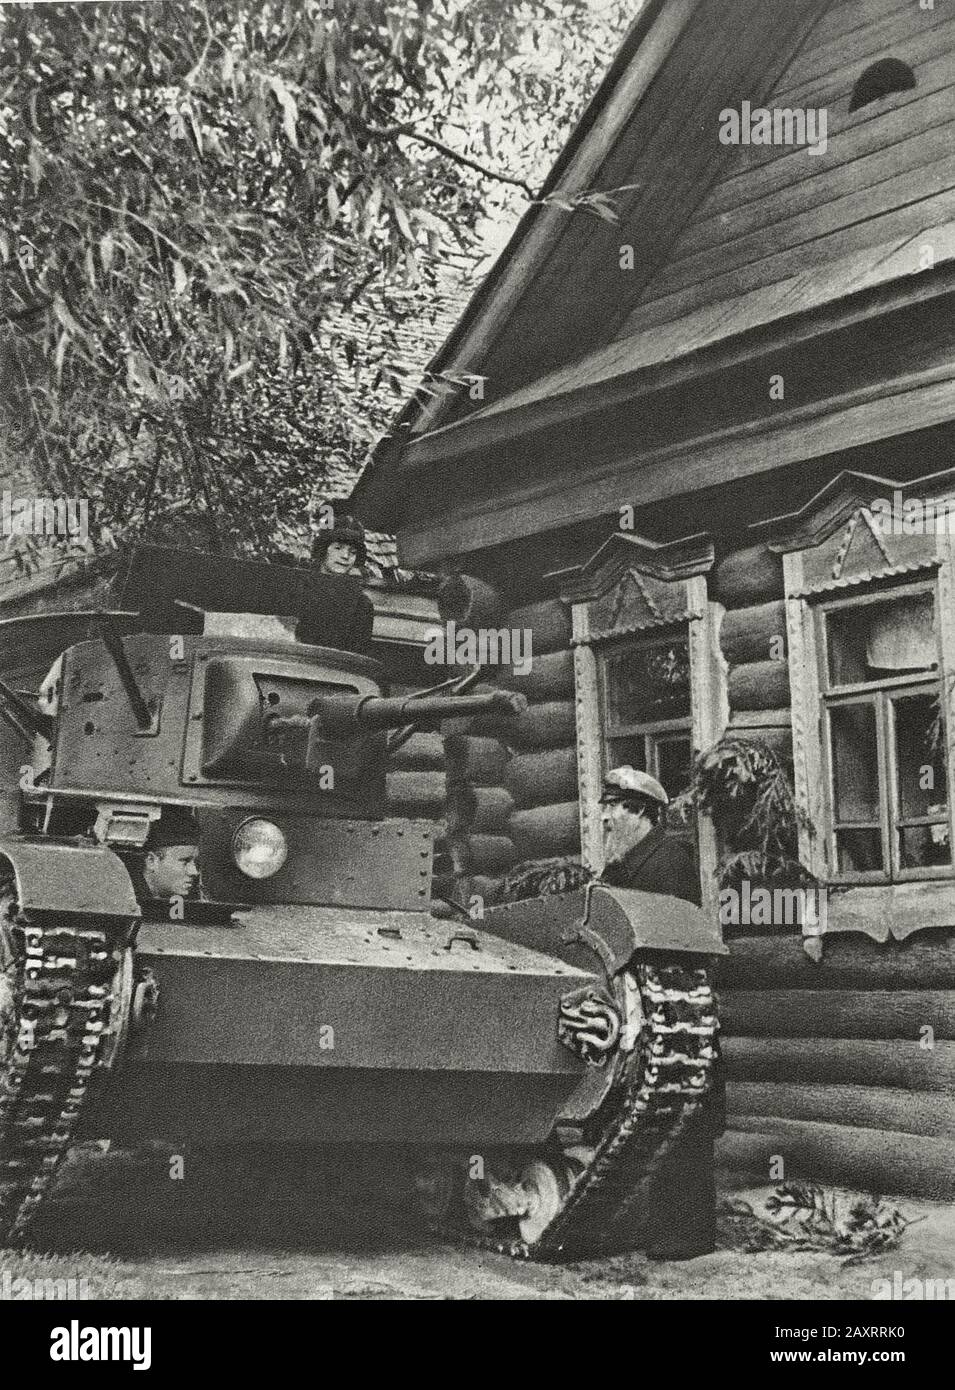 Rote Armee in den 1930er Jahren. Aus dem sowjetischen Propagandabuch von 1937. Sowjetischen Panzer-Besatzung Stockfoto